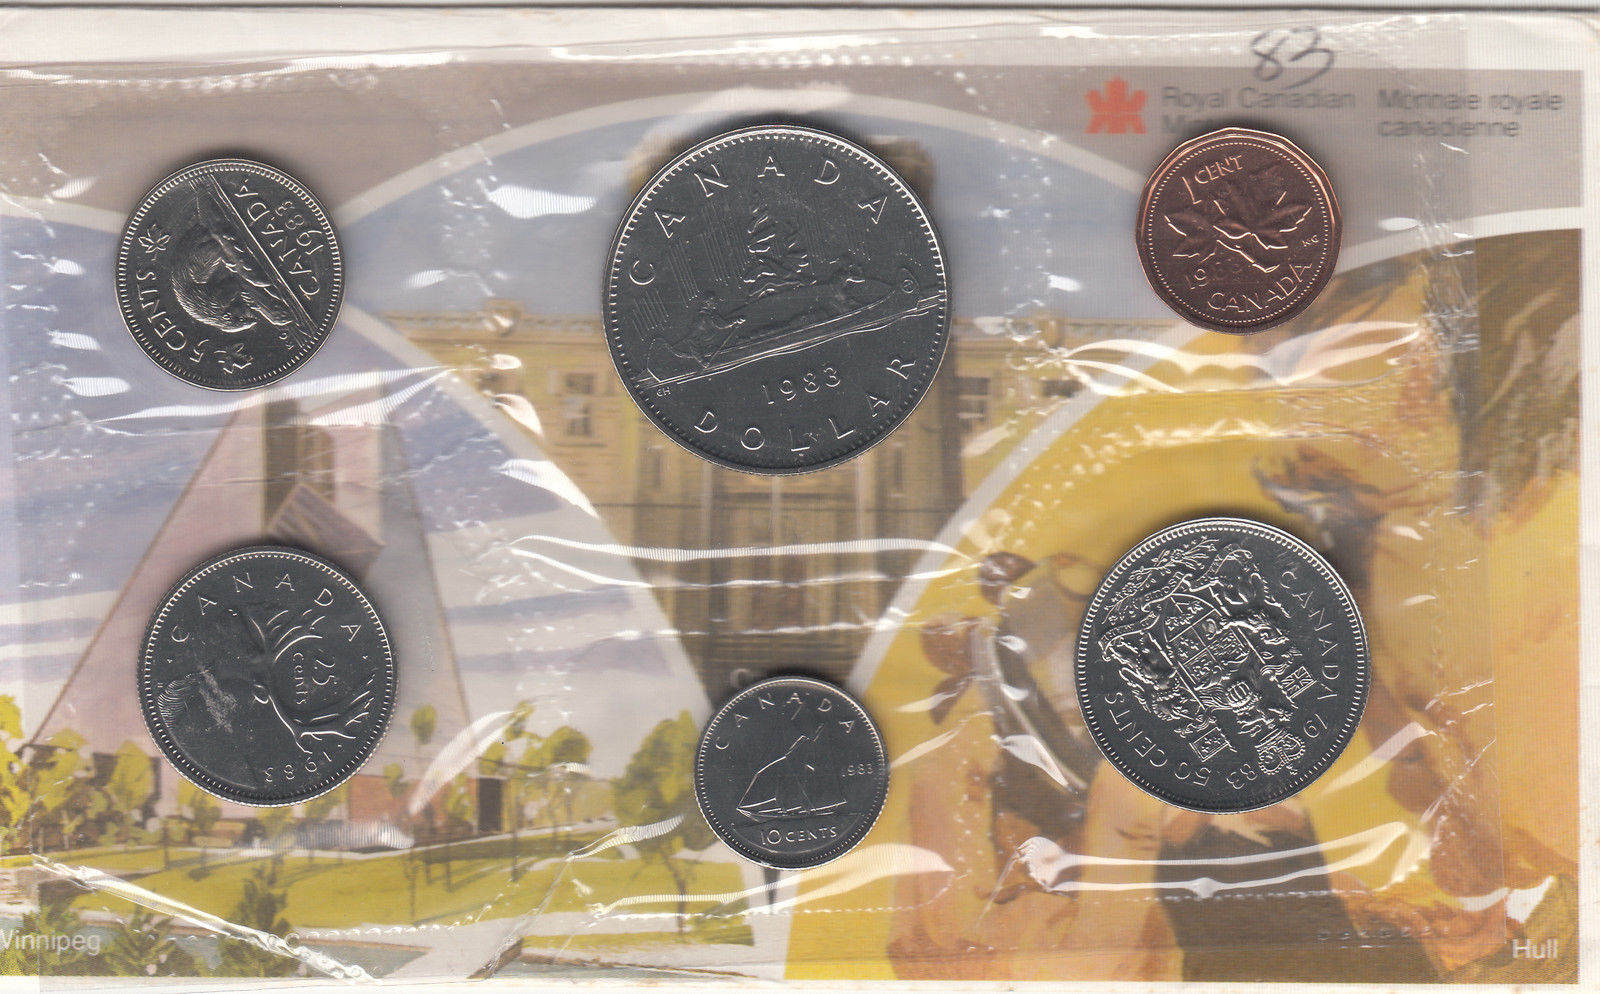 1983 Canadian Specimen Coin Set 